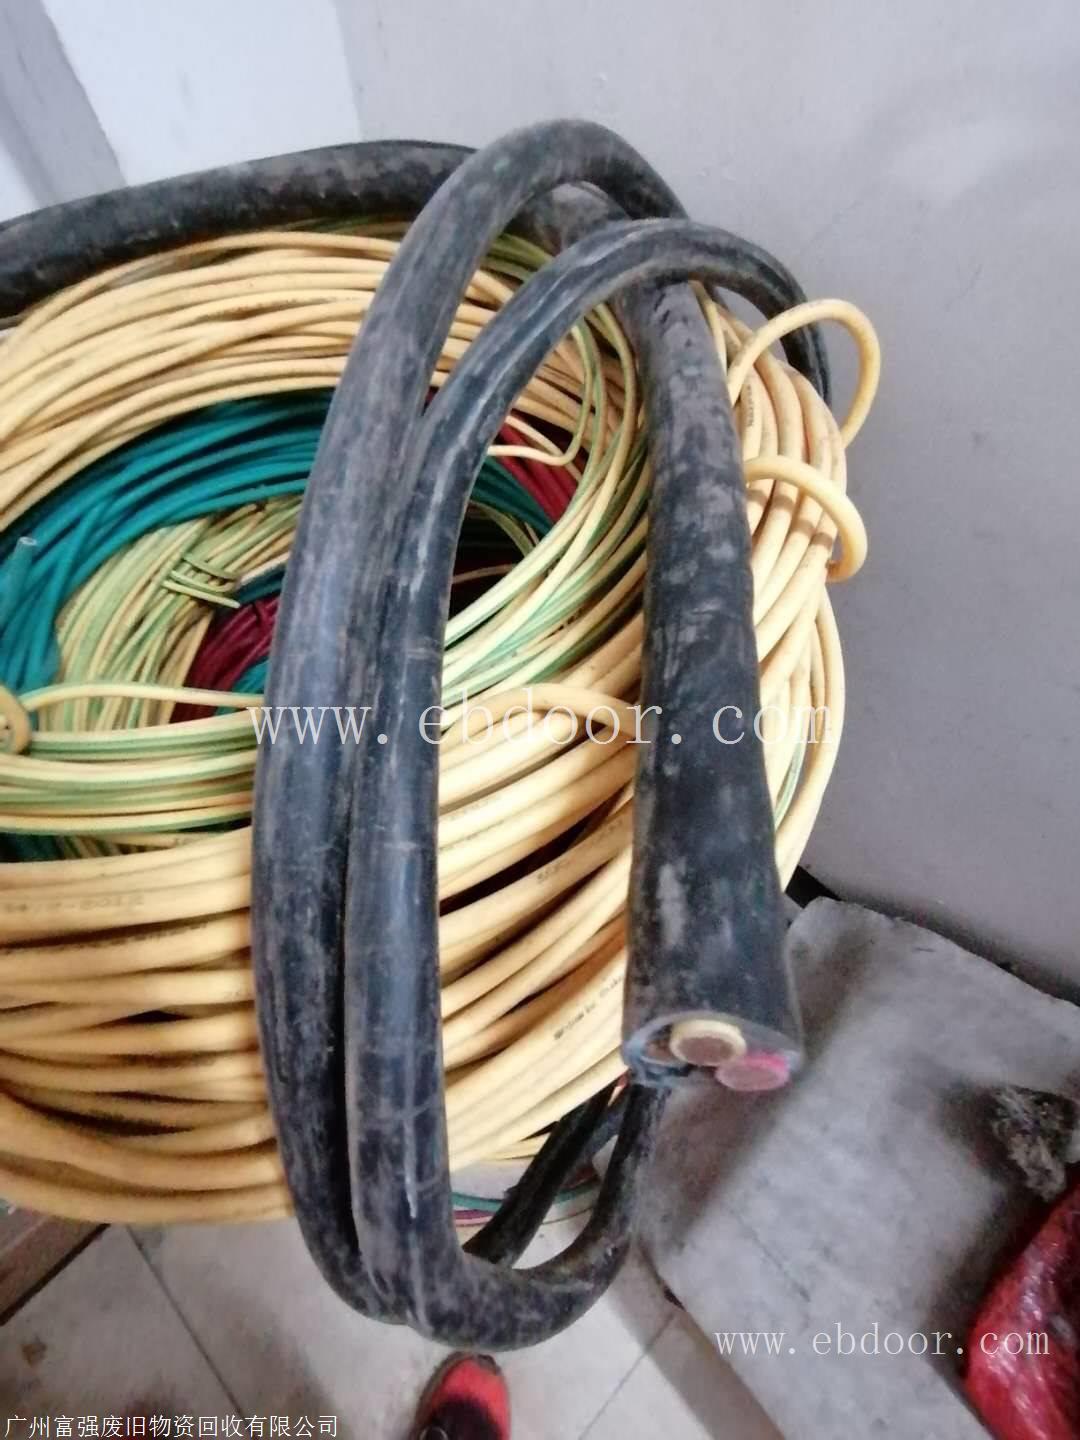 番禺区石基镇废电缆线回收公司